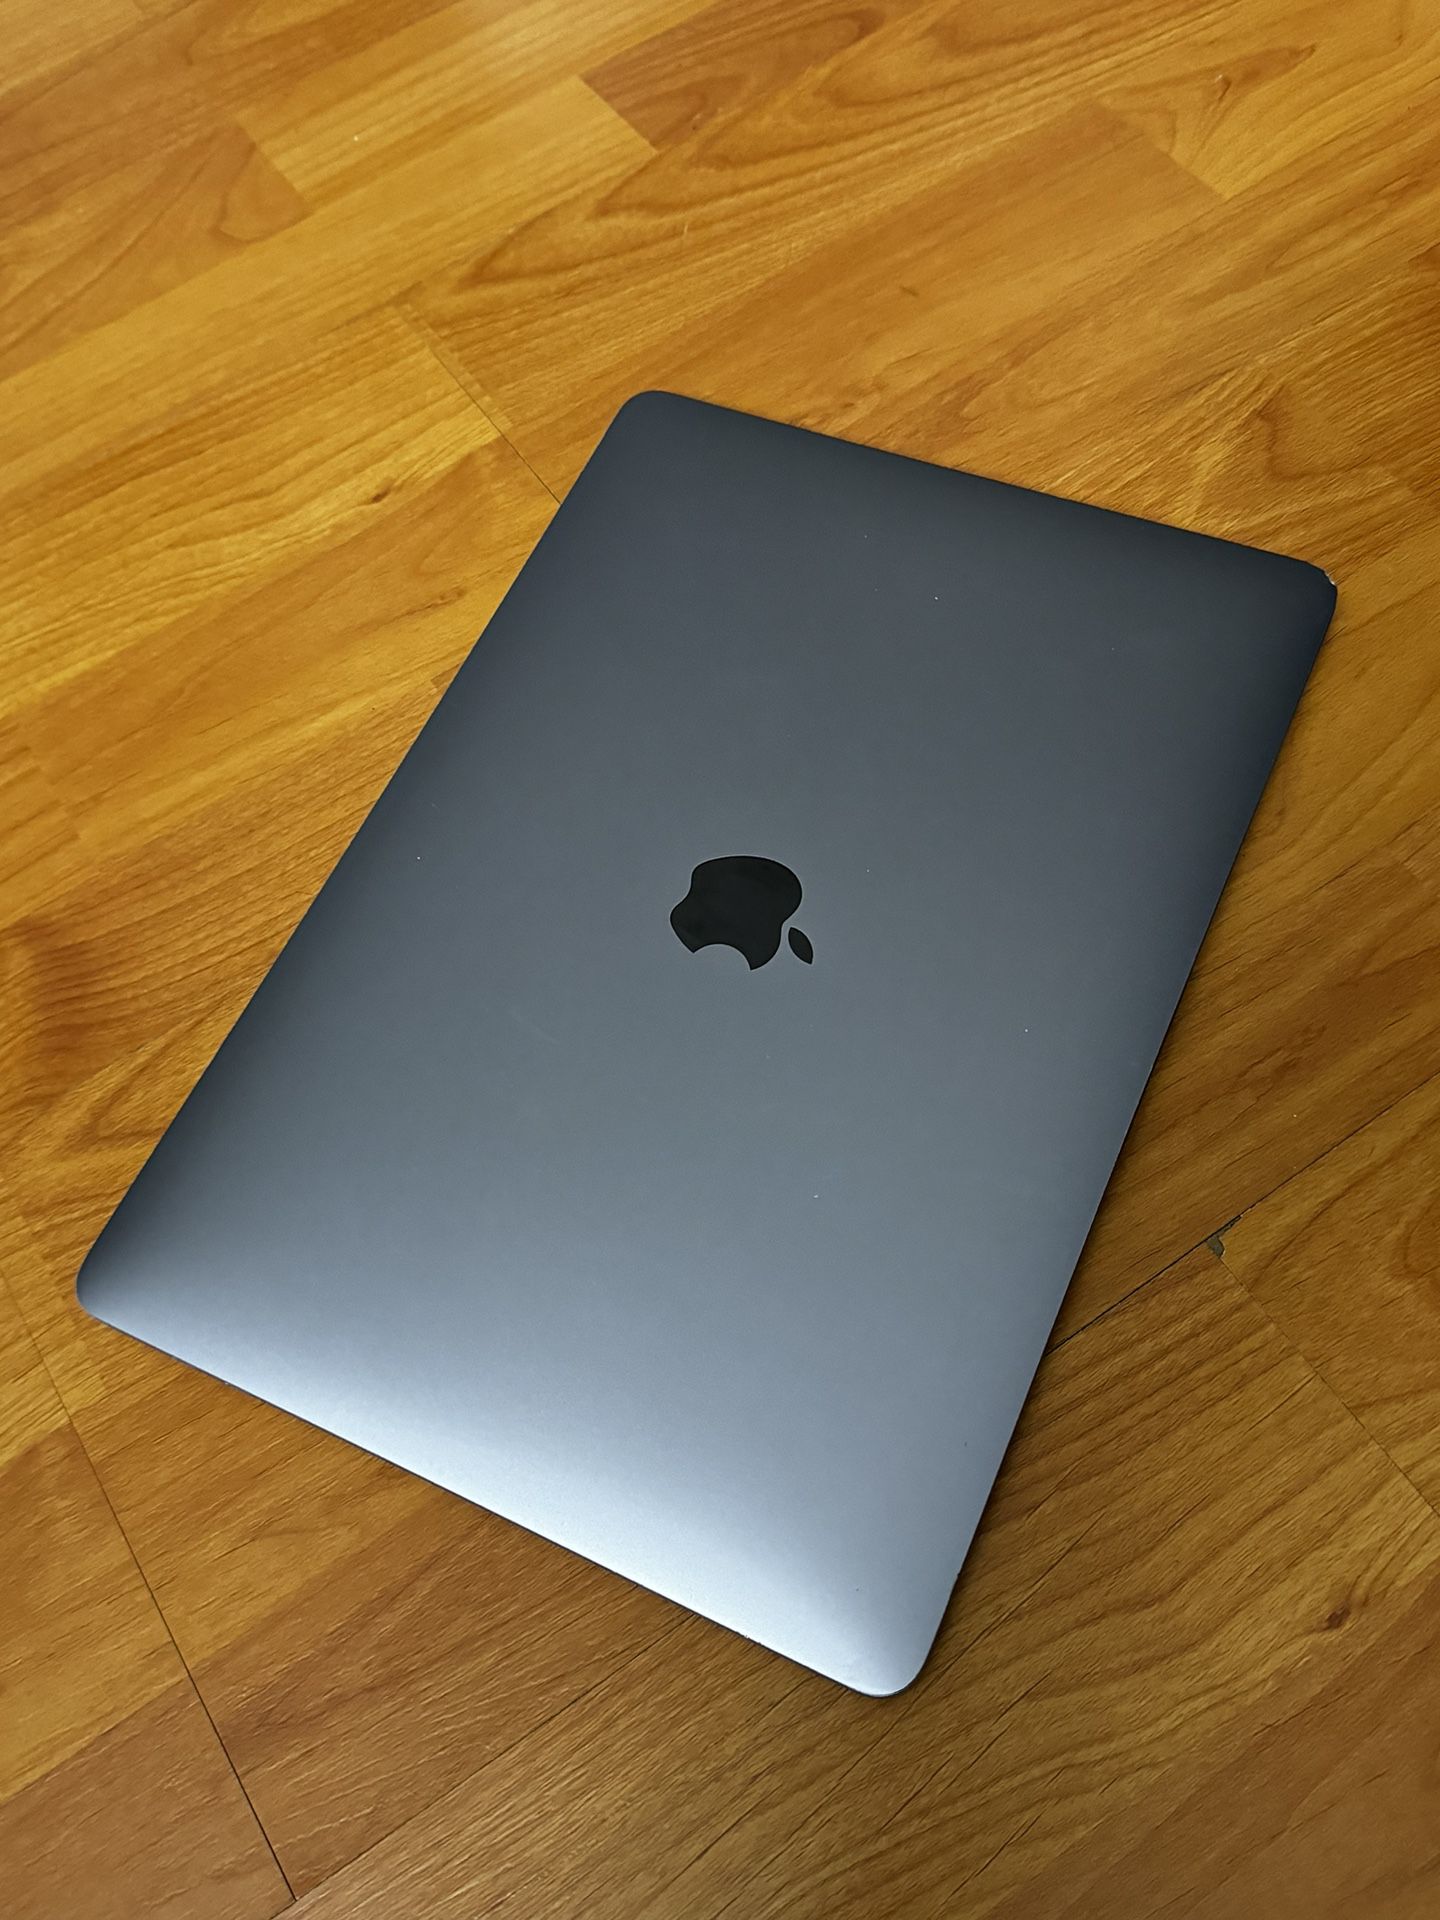 2017 Macbook Pro 13” 3.1GHz i5 8GB 250GB SSD